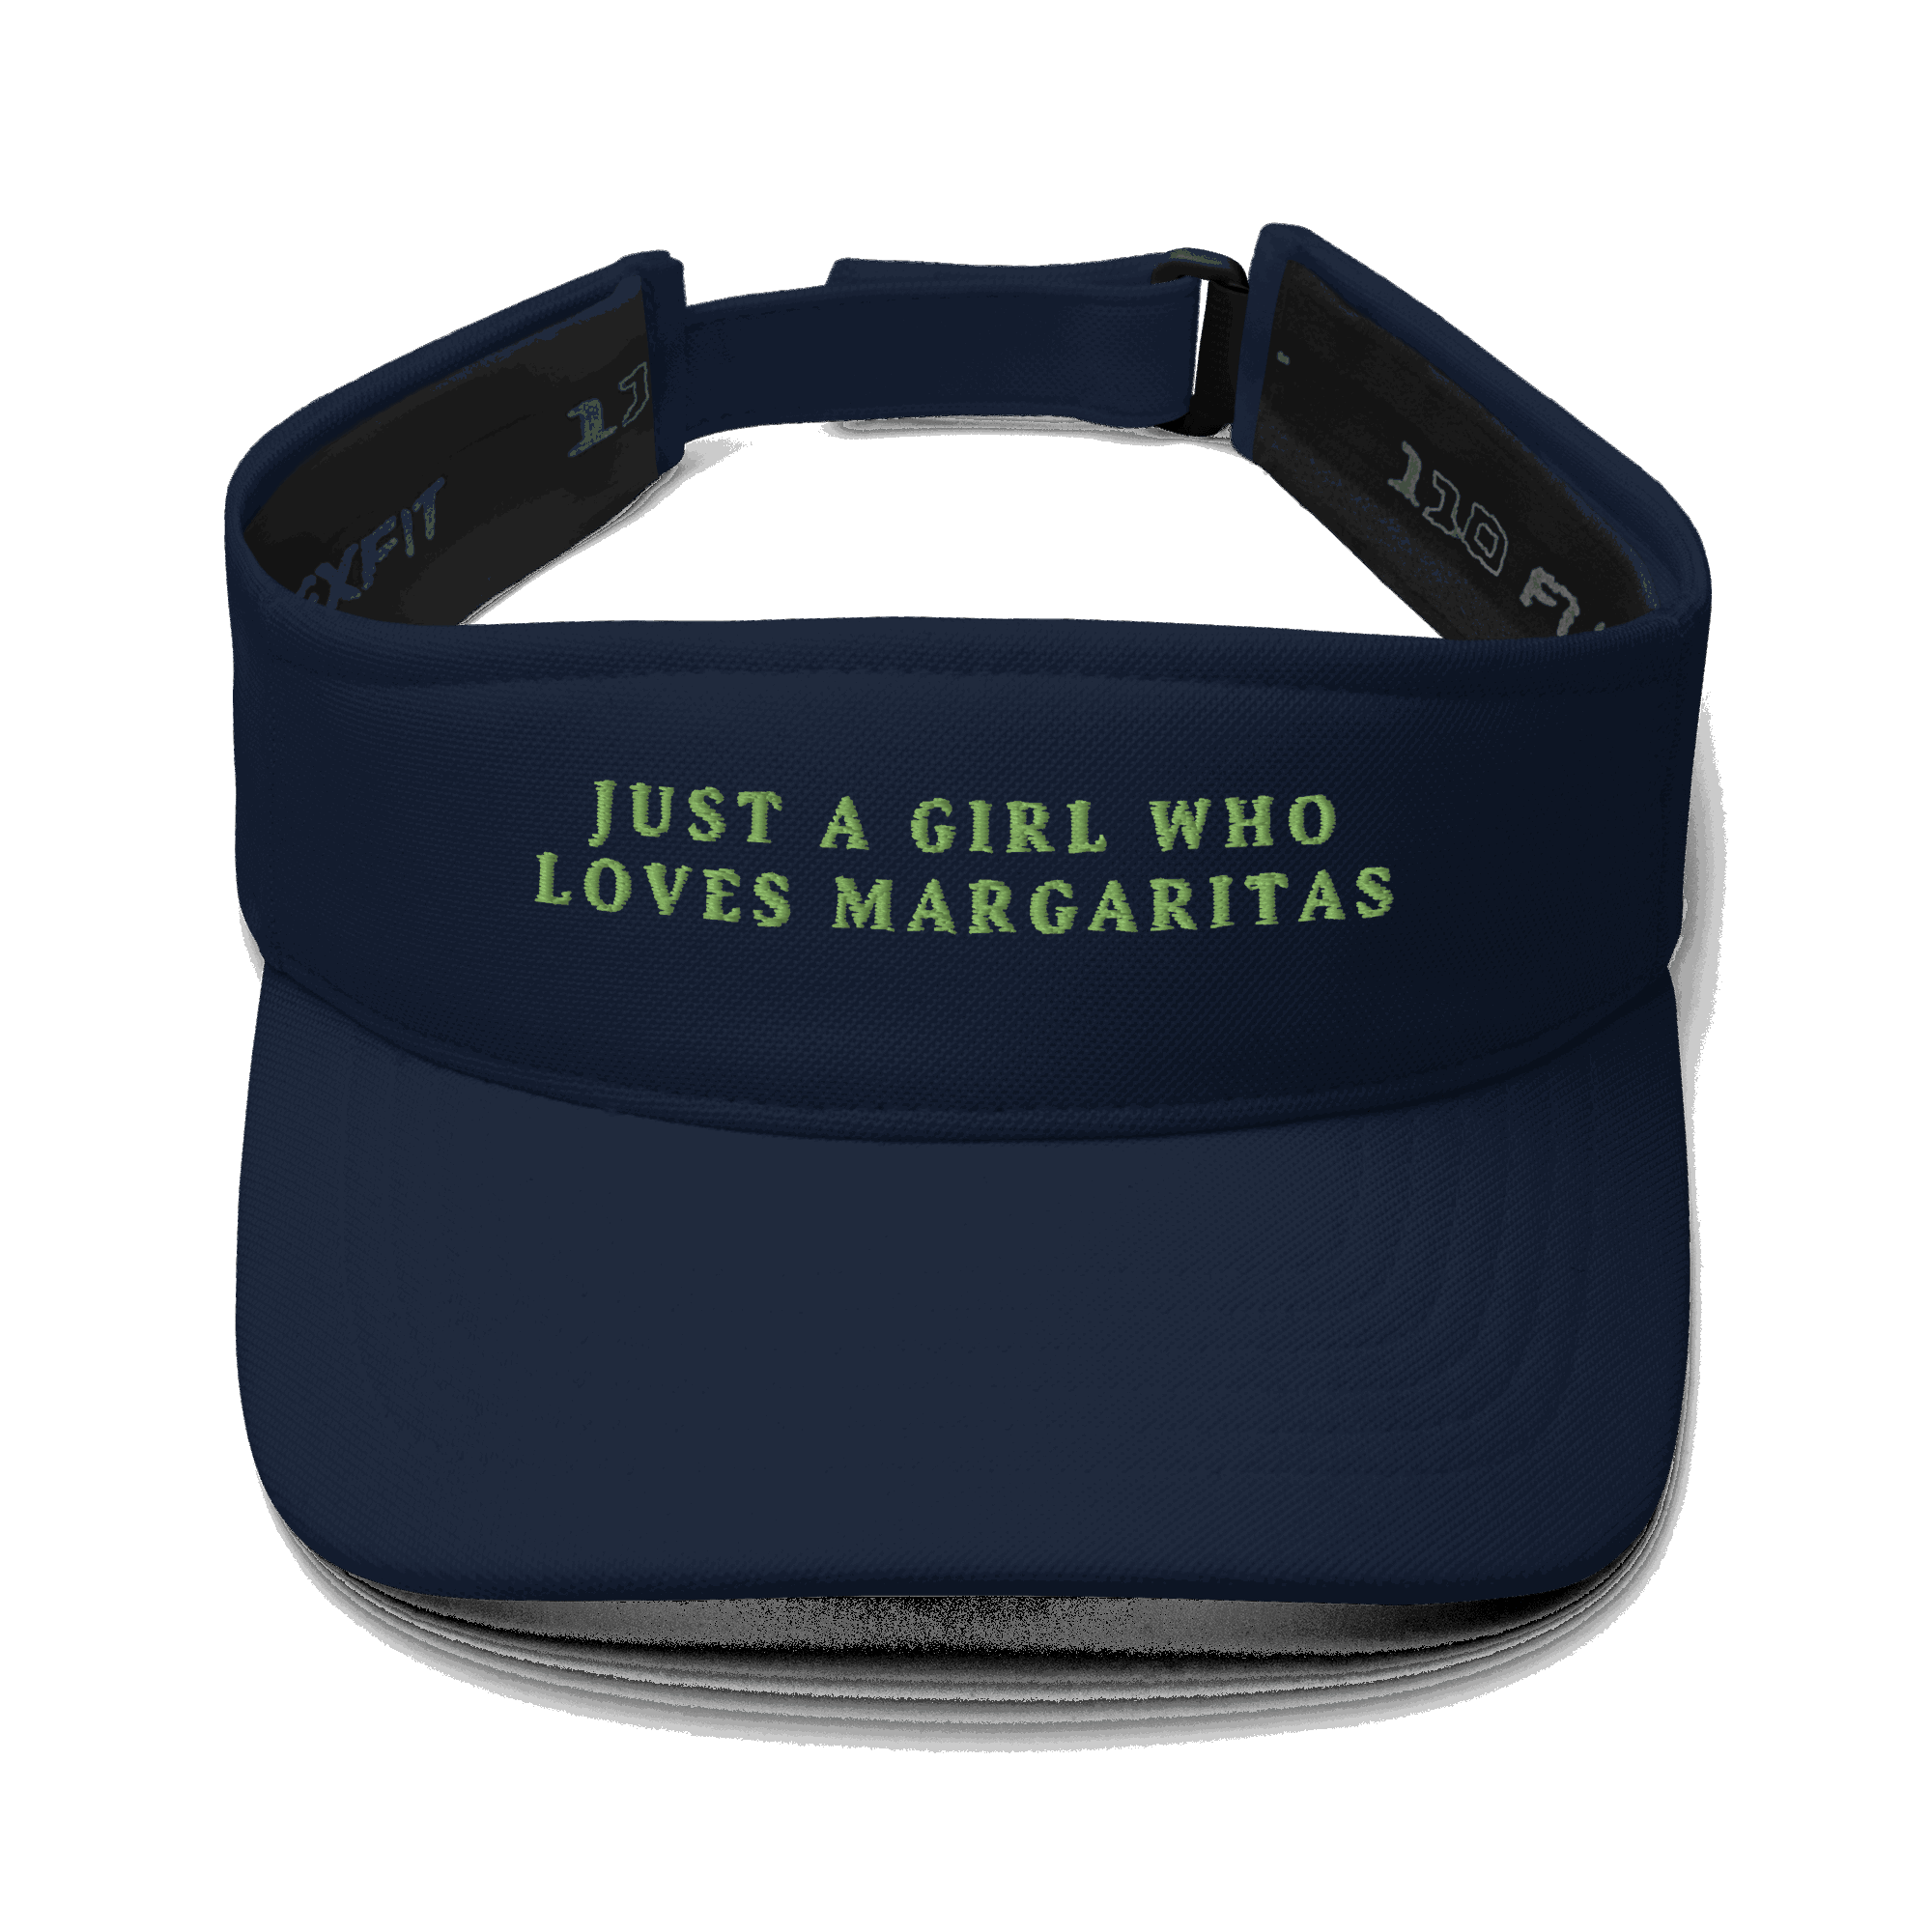 Just a Girl who loves Margaritas Visor - The Refined Spirit